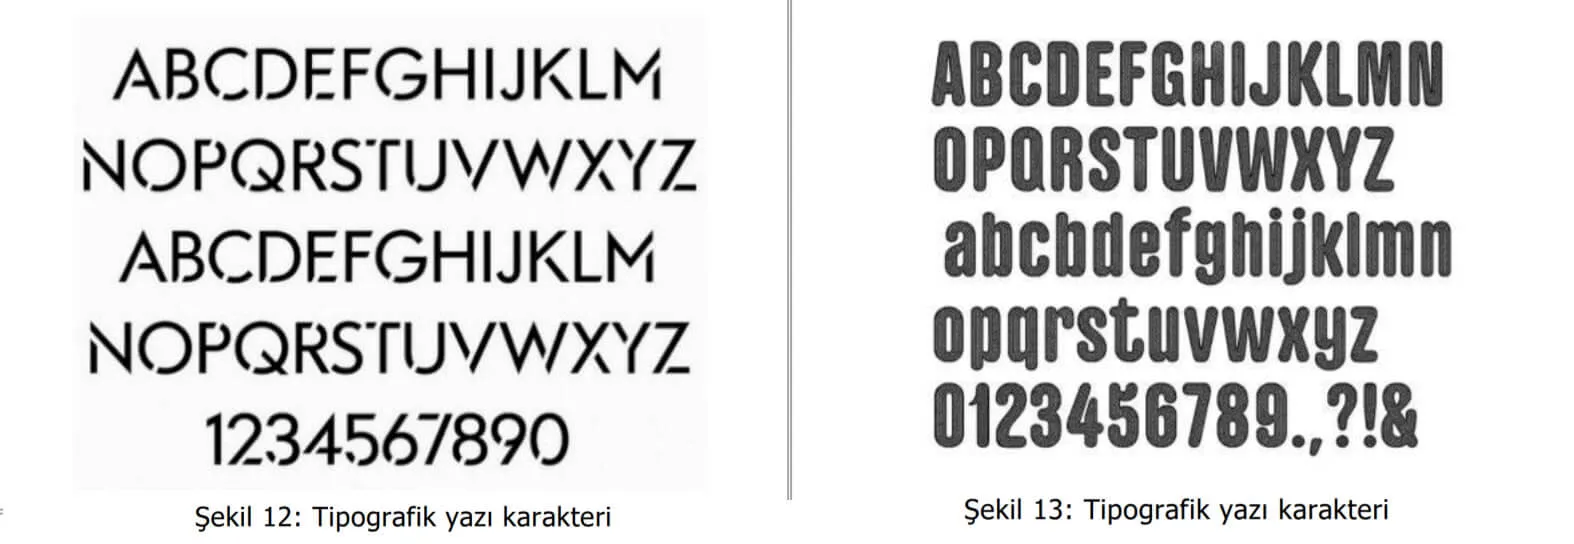 tipografik yazı karakter örnekleri-bayrampaşa web tasarım